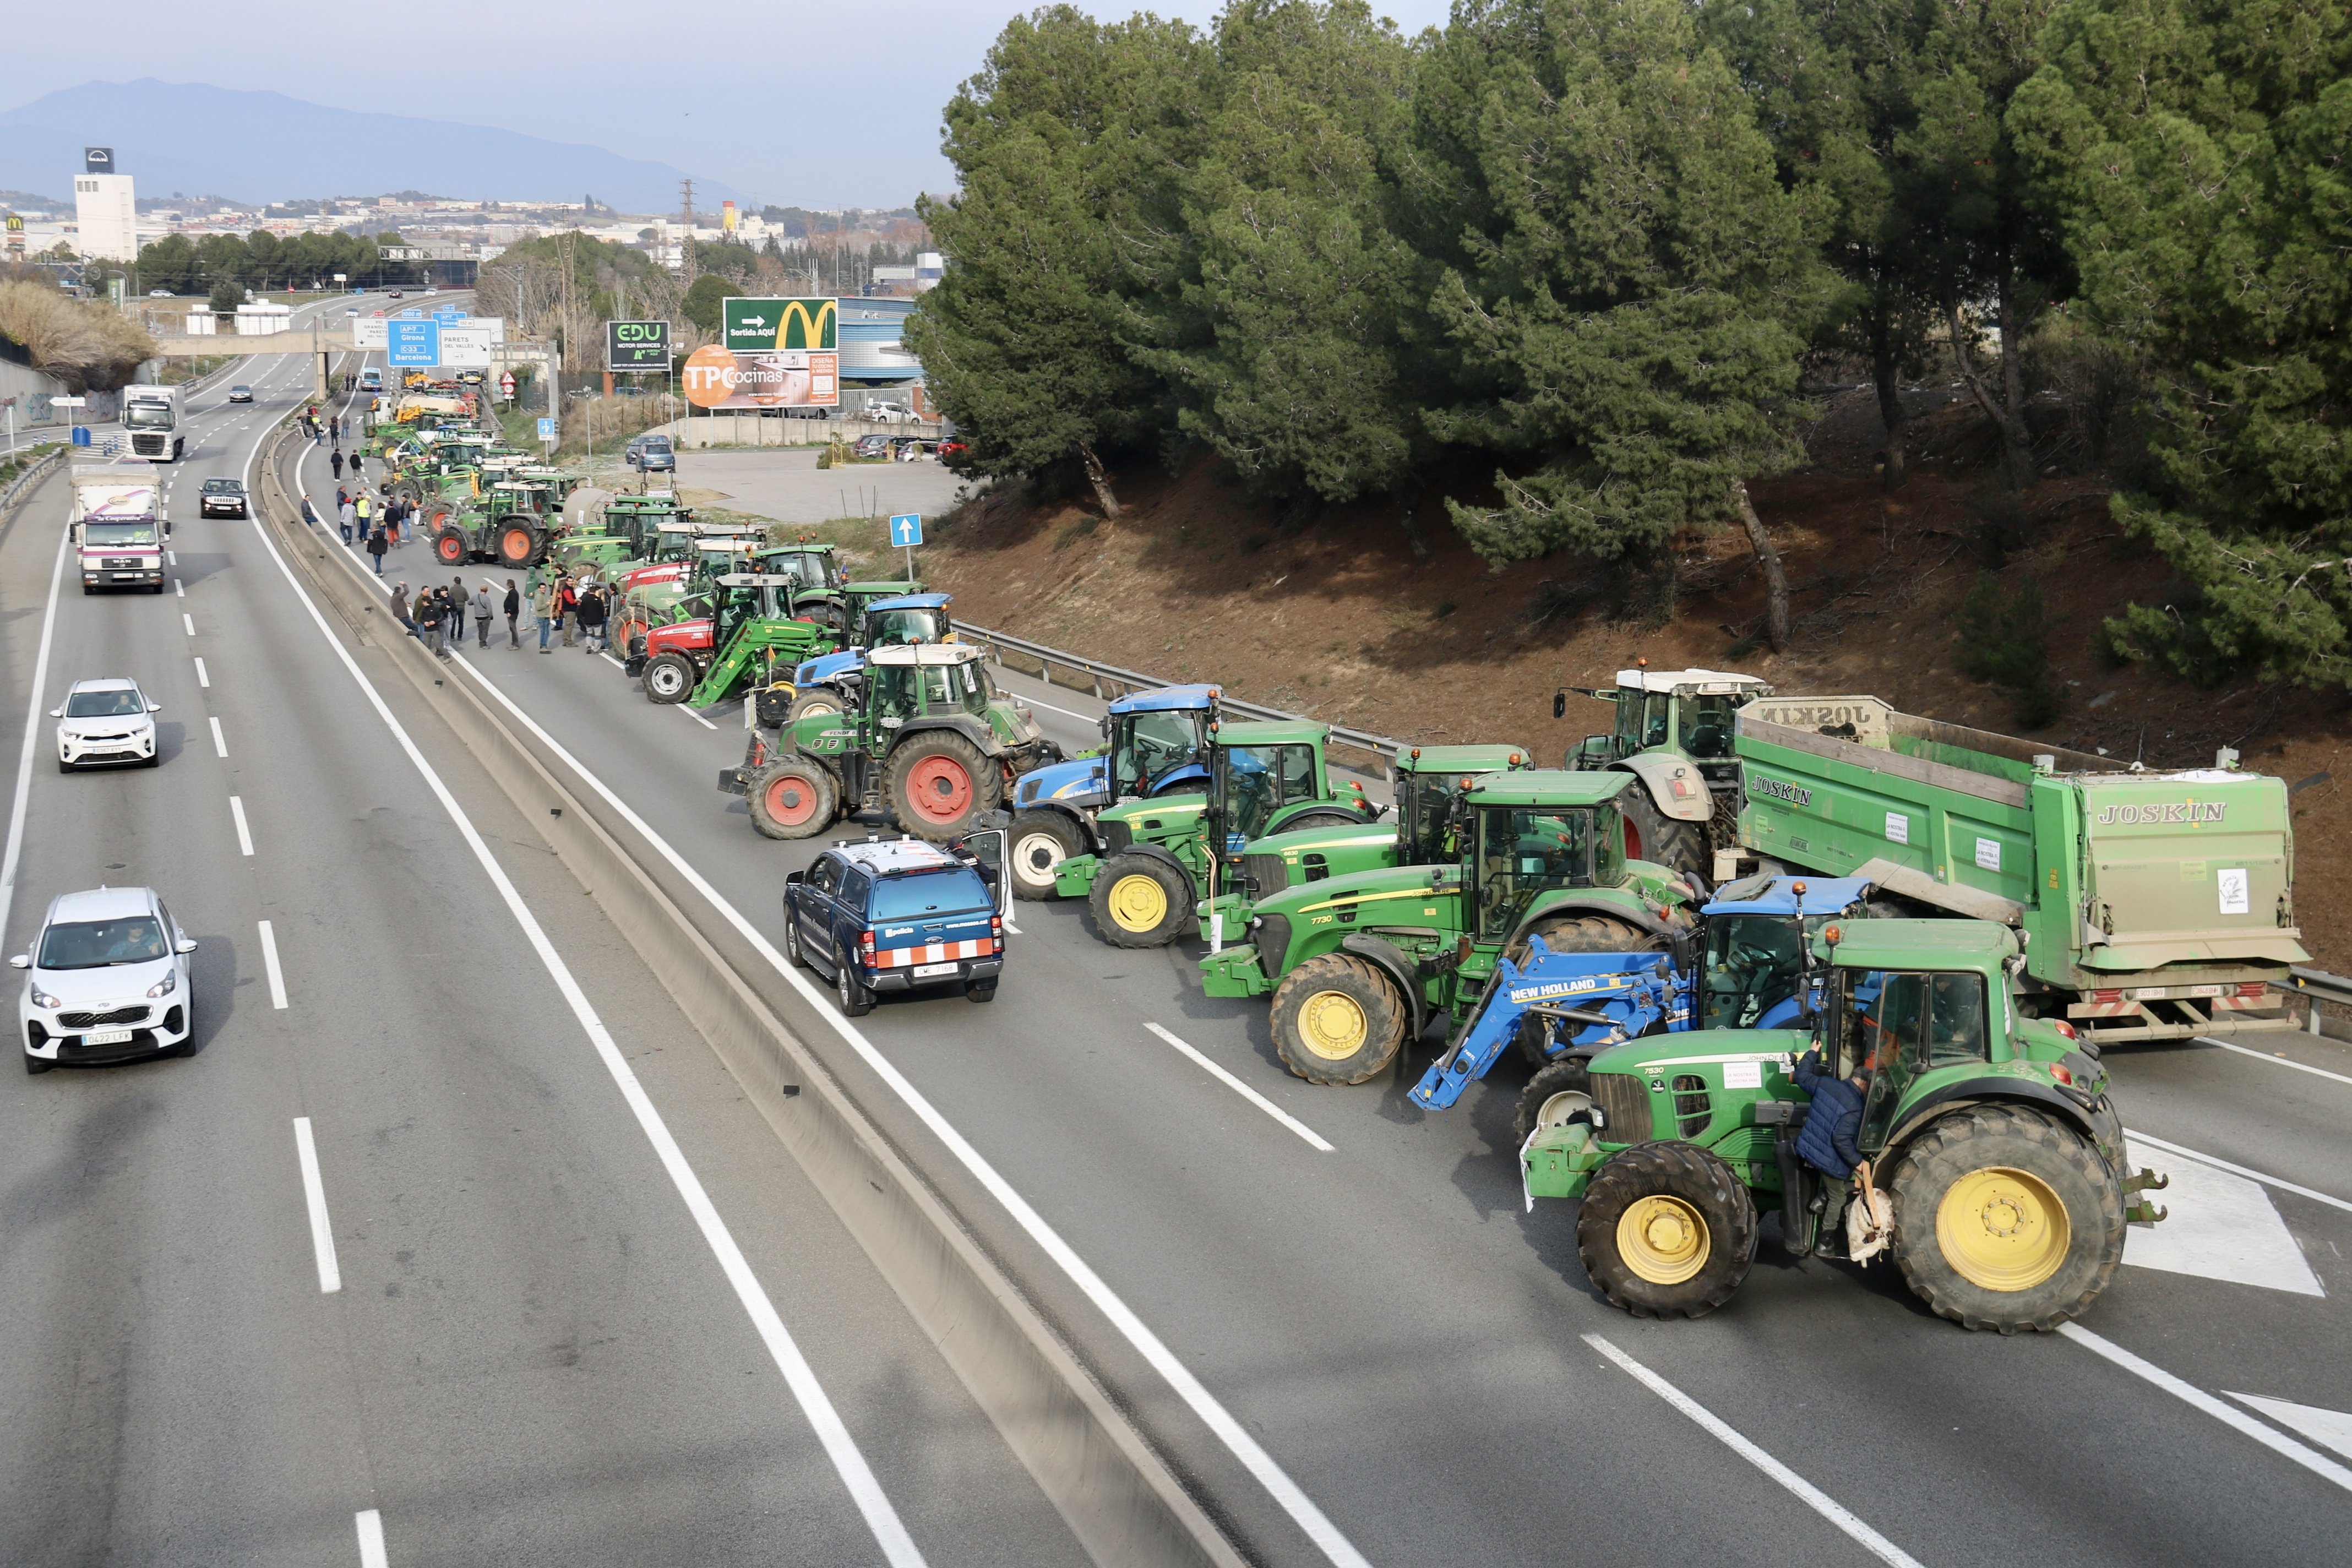 Col·lapsar Barcelona: l'objectiu dels pagesos per aquest dimecres